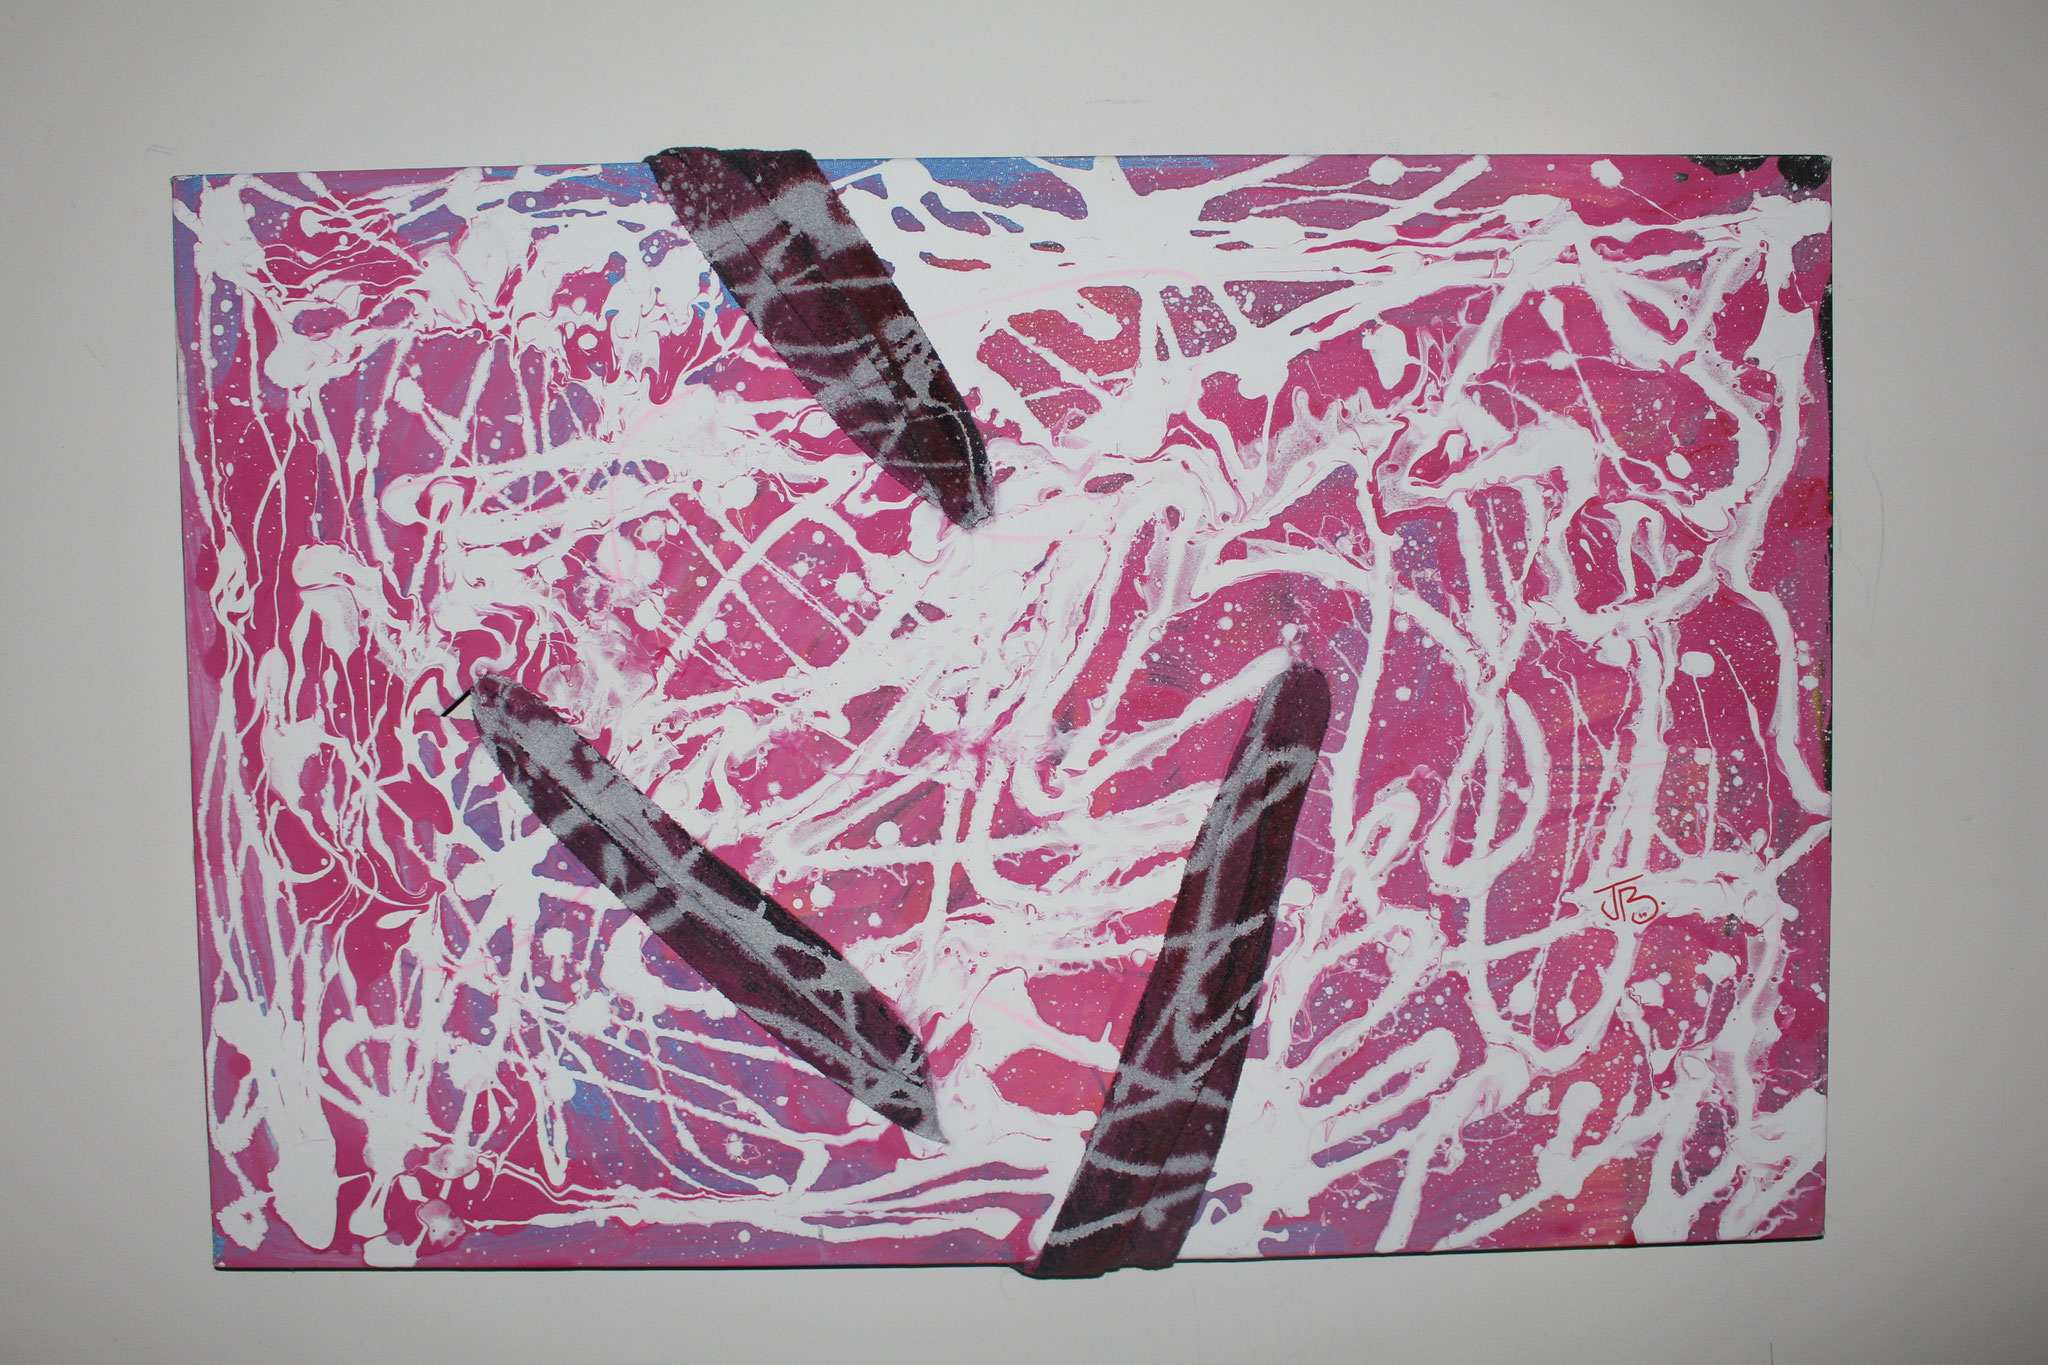 24." Untitled. " (90 x 60cm) Gouache paint + scarf. 2013     